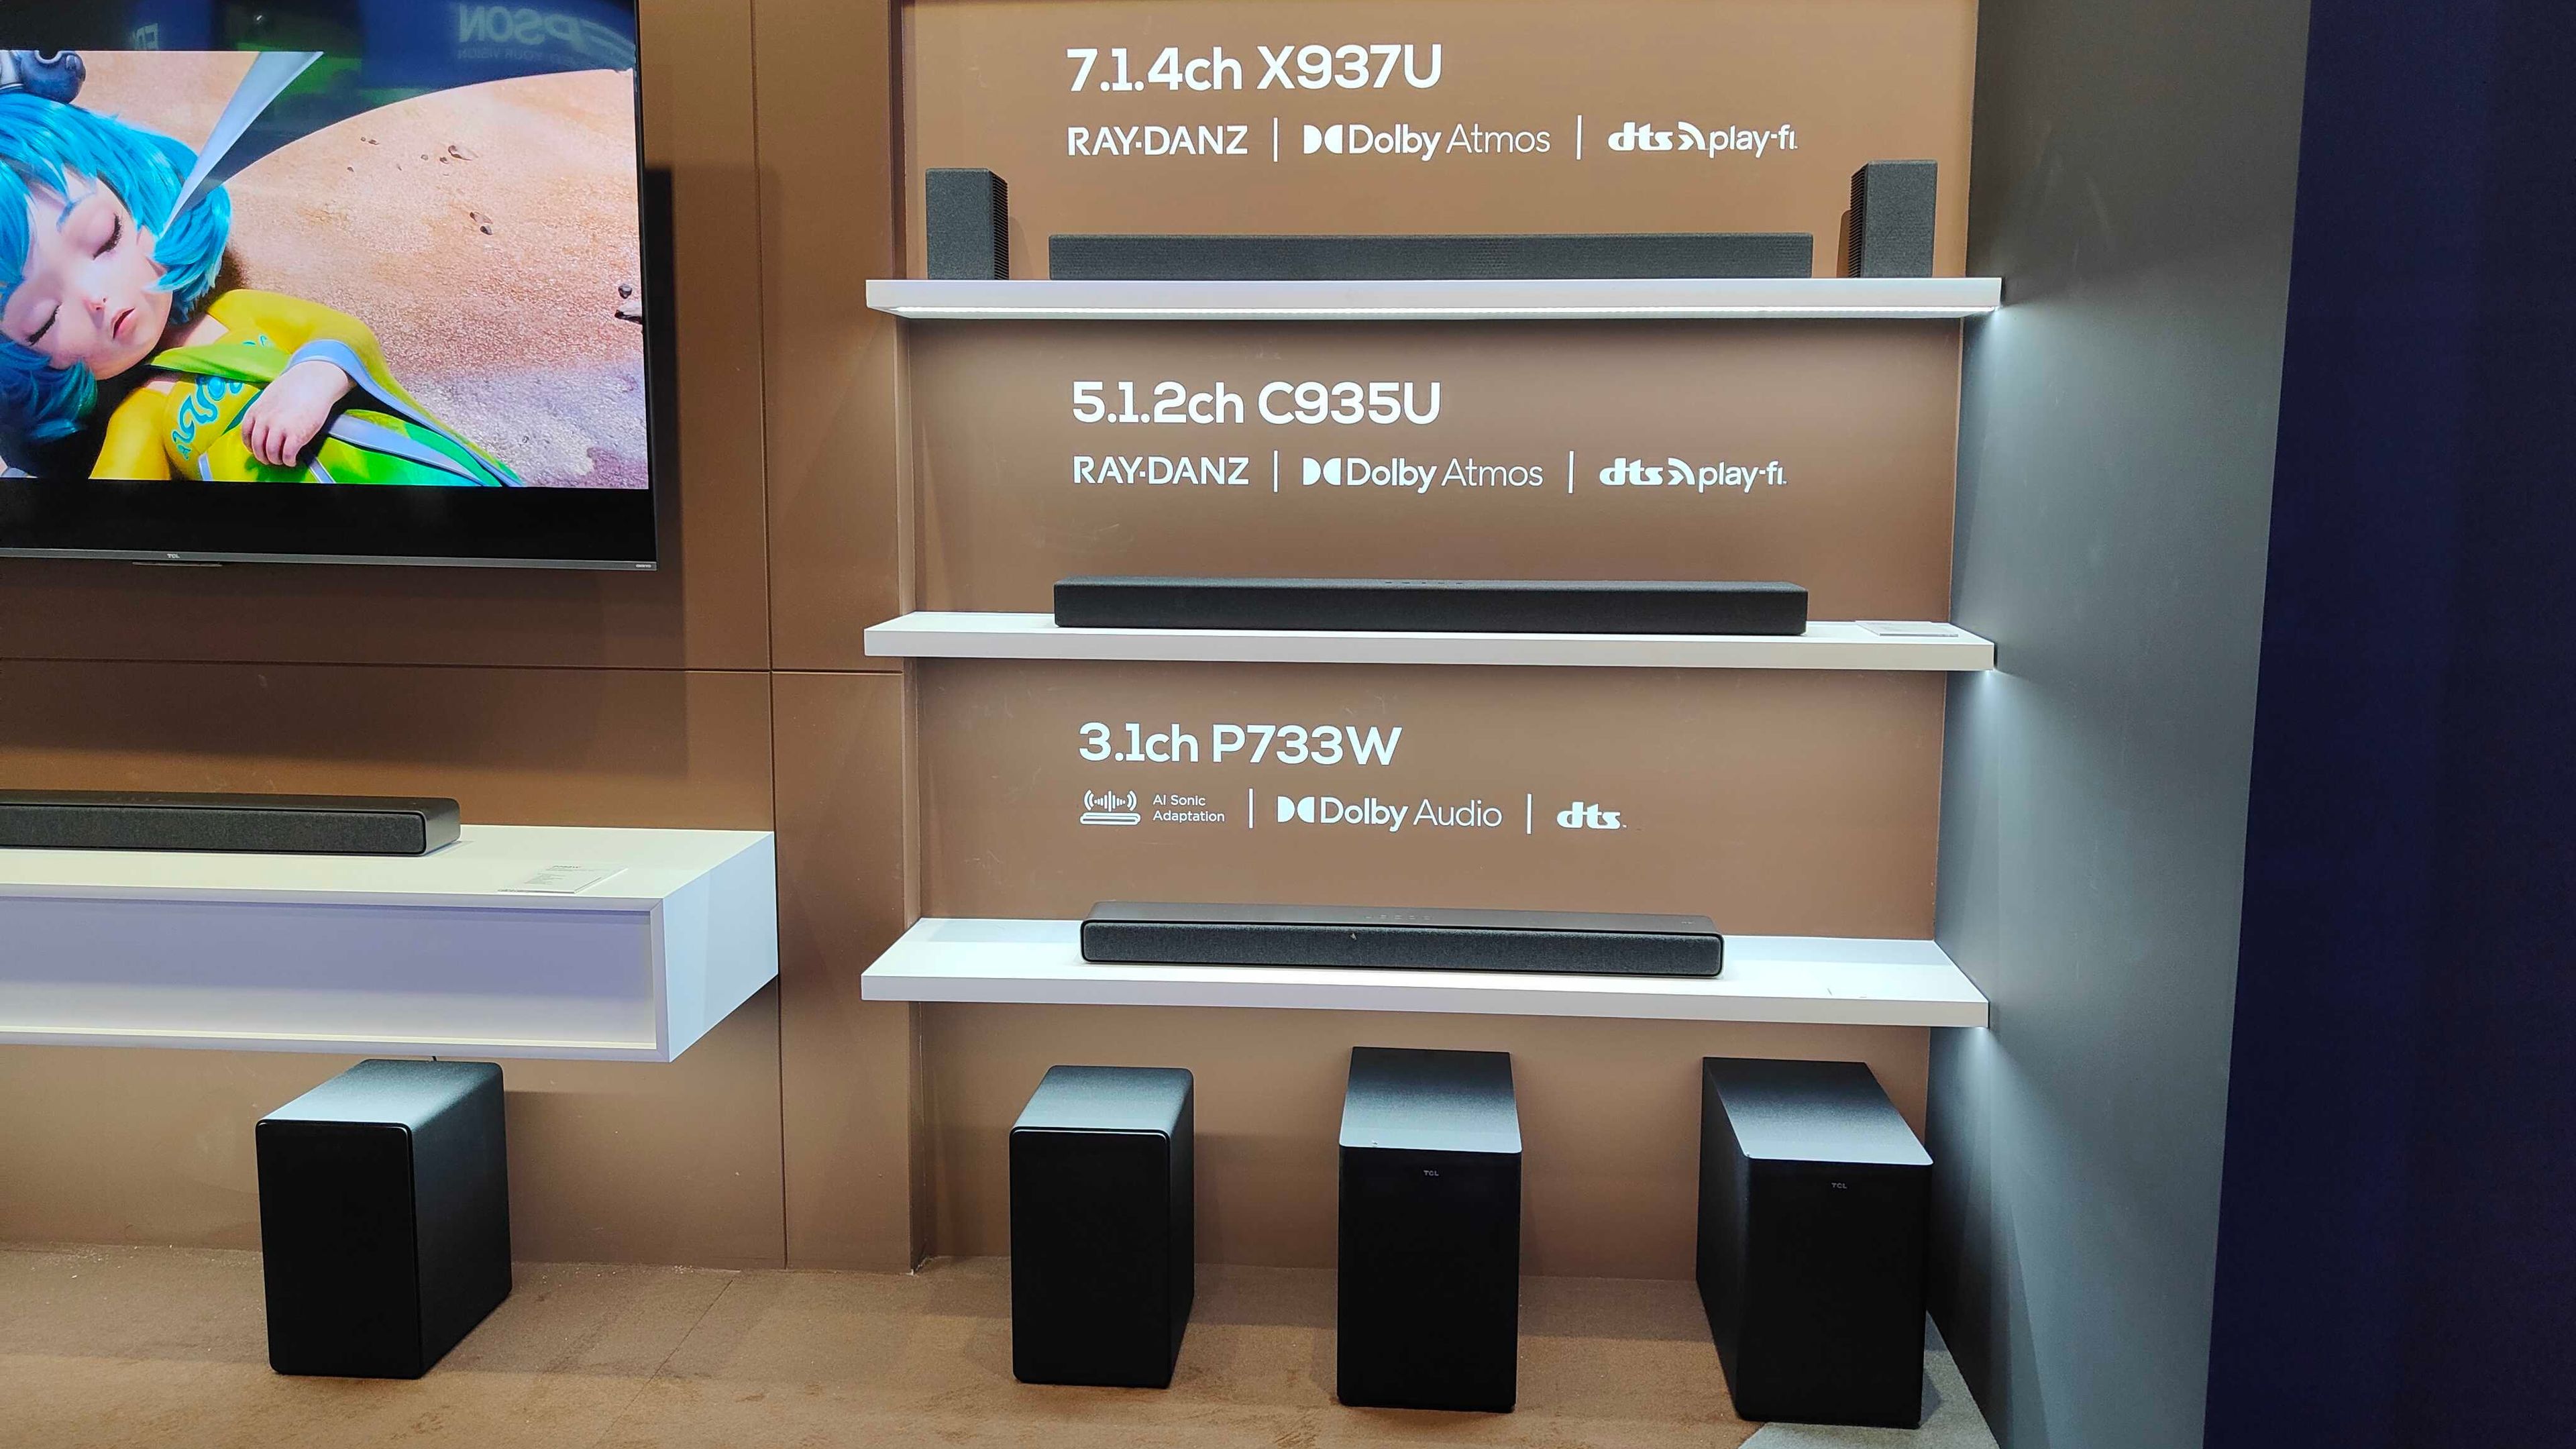 TCL Ray DANZ X937U: así es la nueva barra de sonido con tecnología Dolby Atmos, DTS:X y 7.1 canales